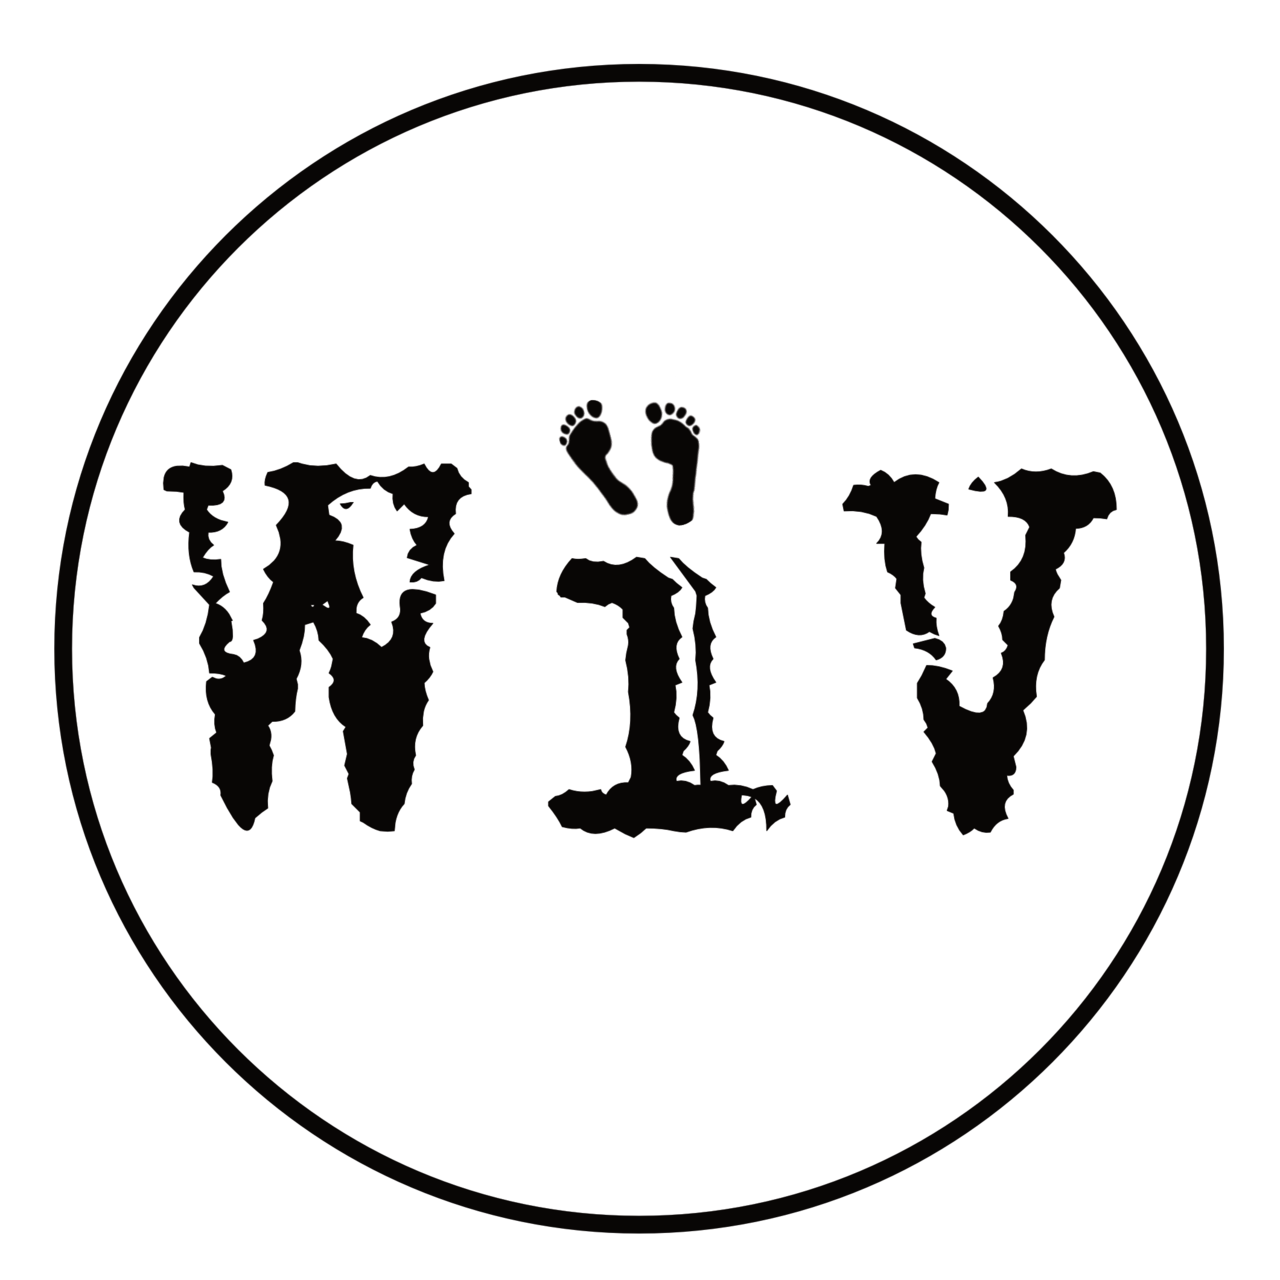 WIV Reports — Uncensored